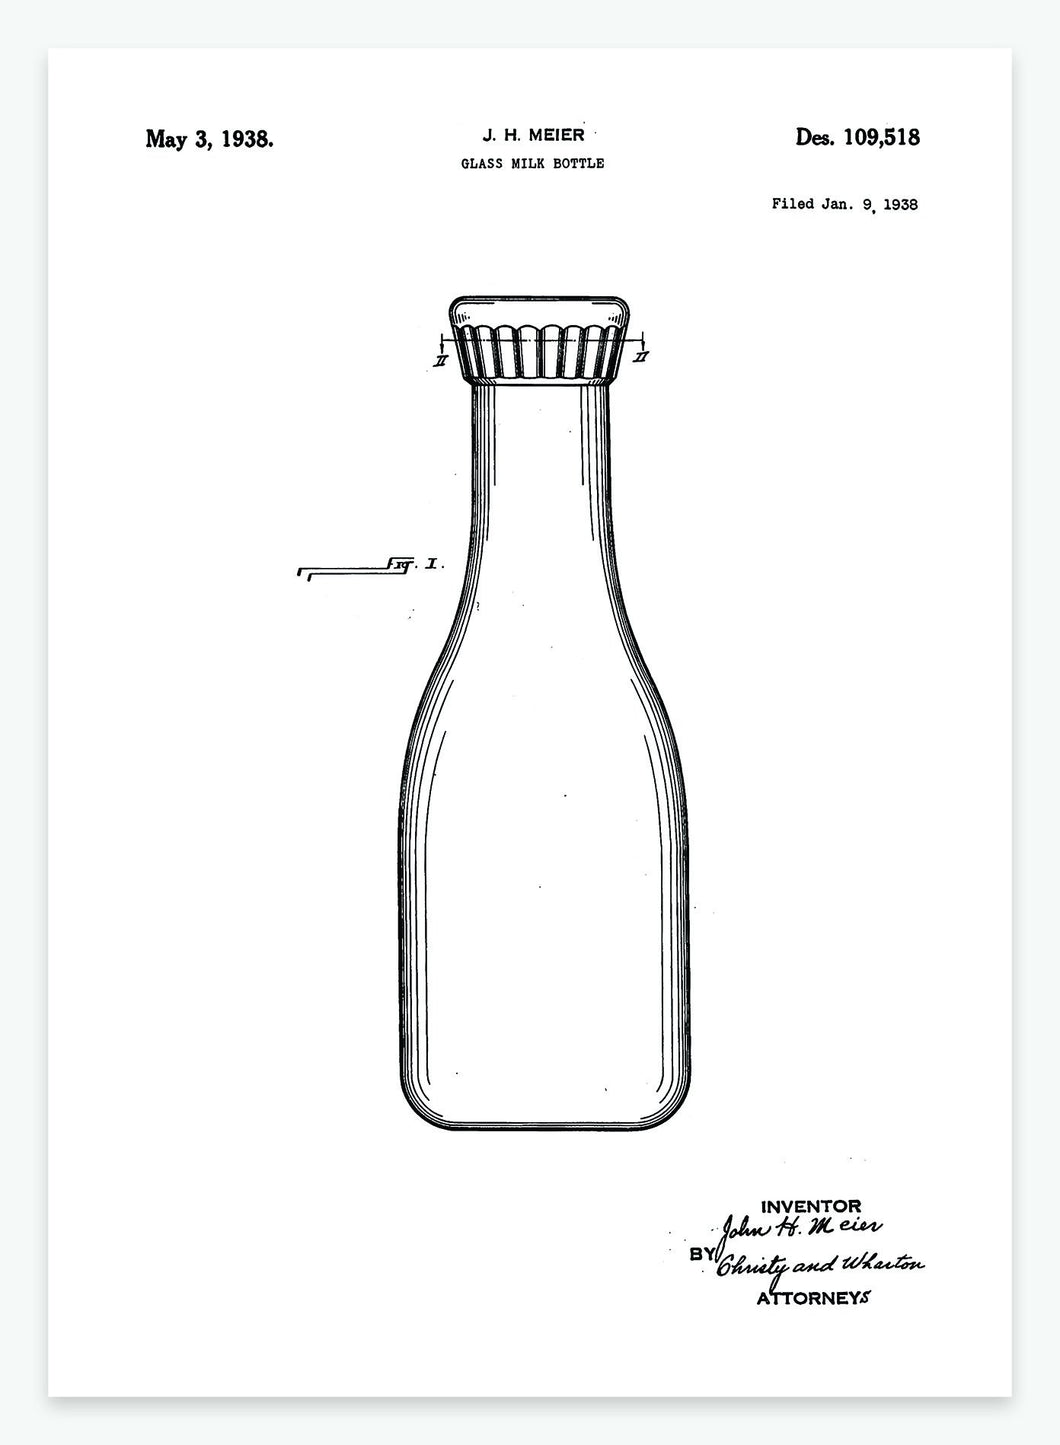 Mælkeflaske | Smukt patent til din væg | plakat | poster - decoARTE